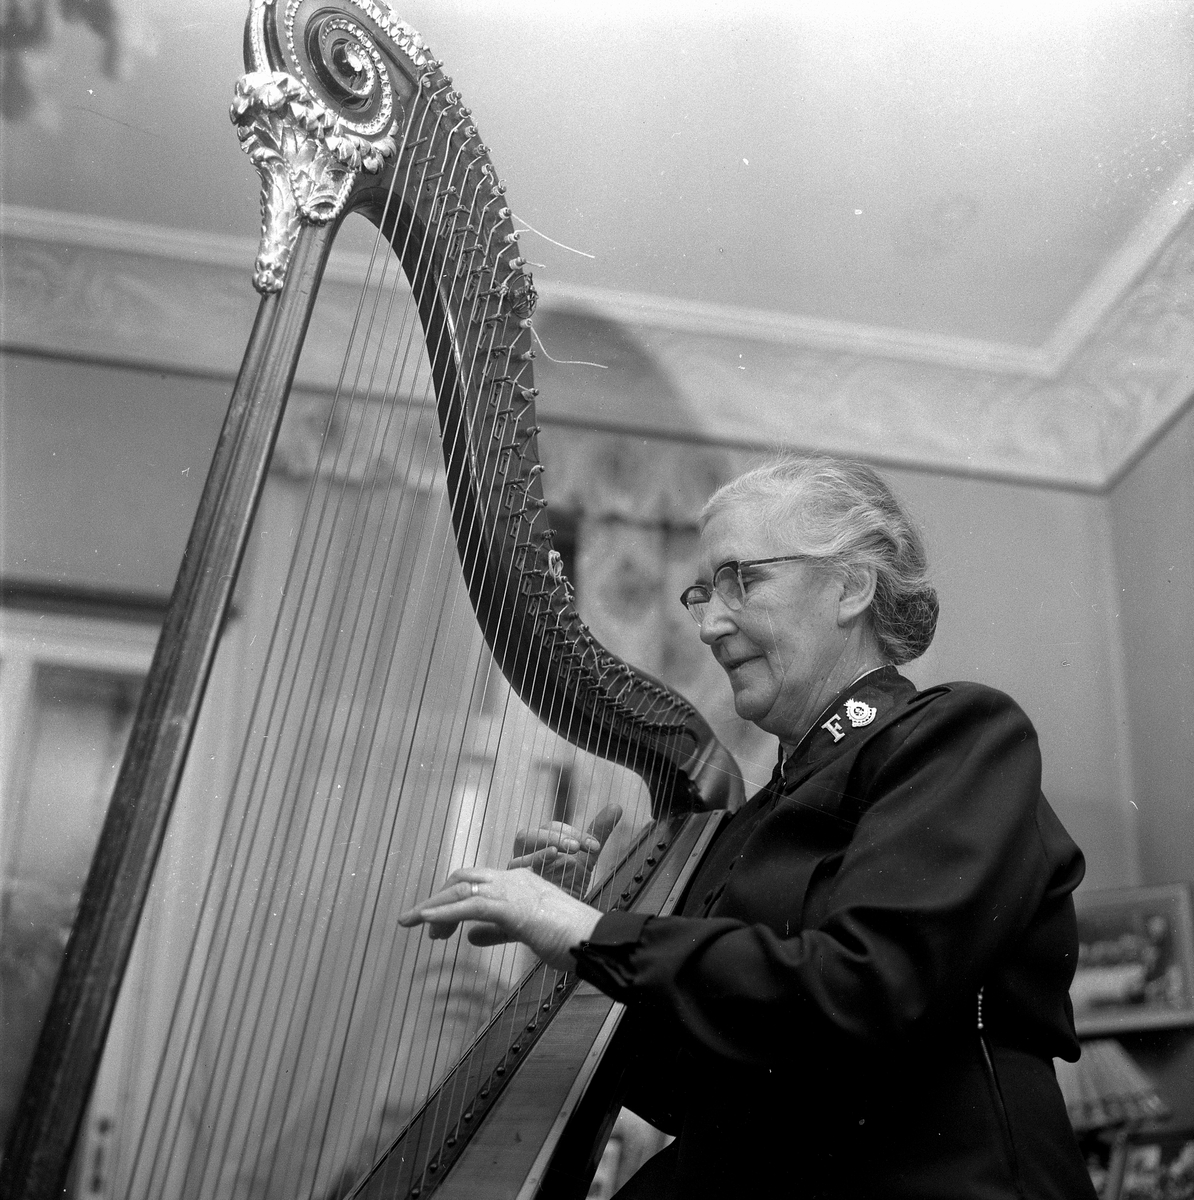 Fru Elsa Hennings, Hemförbundet.
19 Februari 1958.